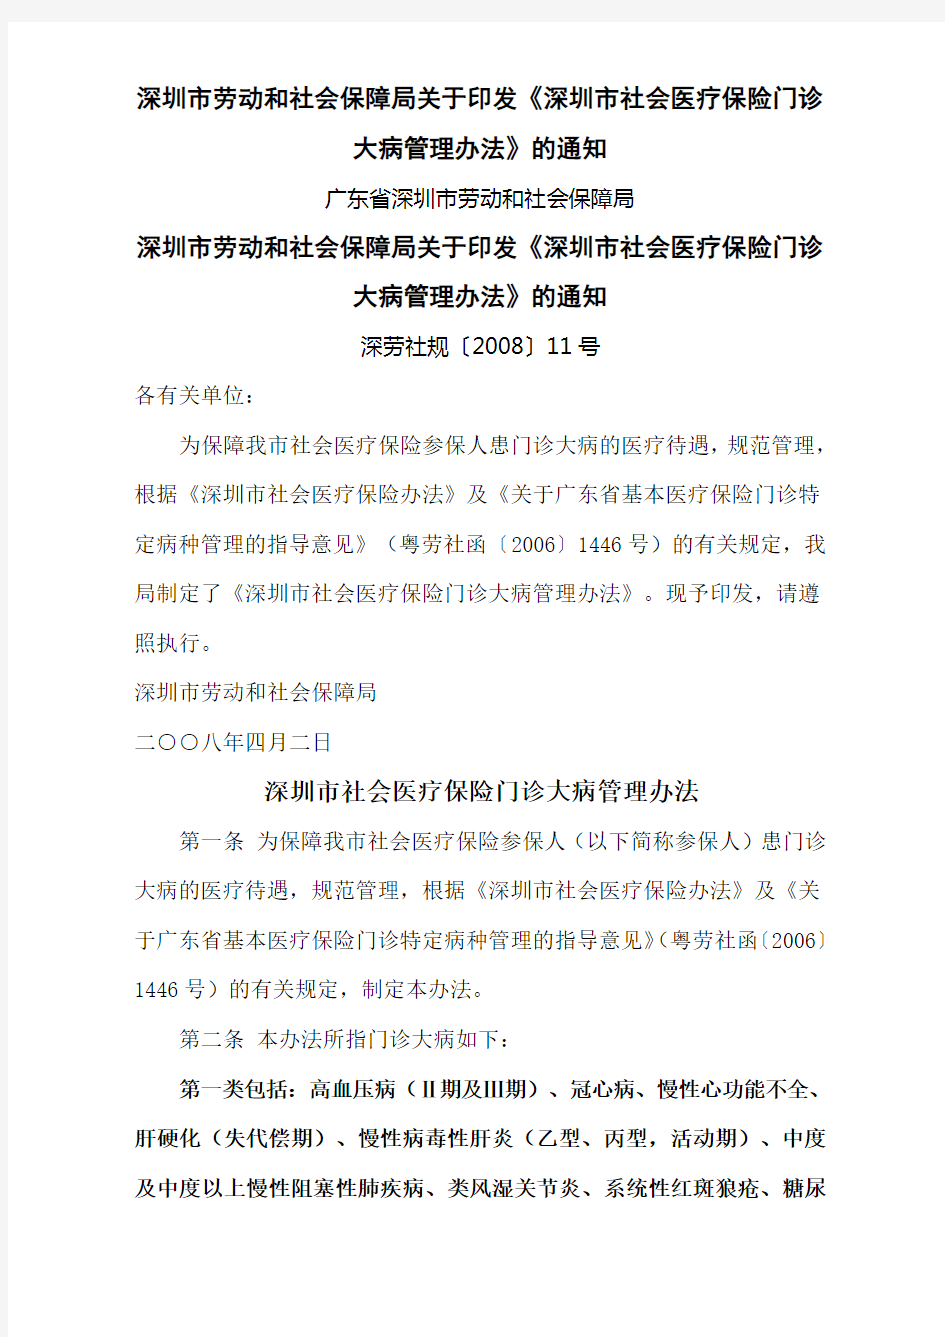 市劳动和社会保障局关于印发深圳市社会医疗保险门诊大病管理办法